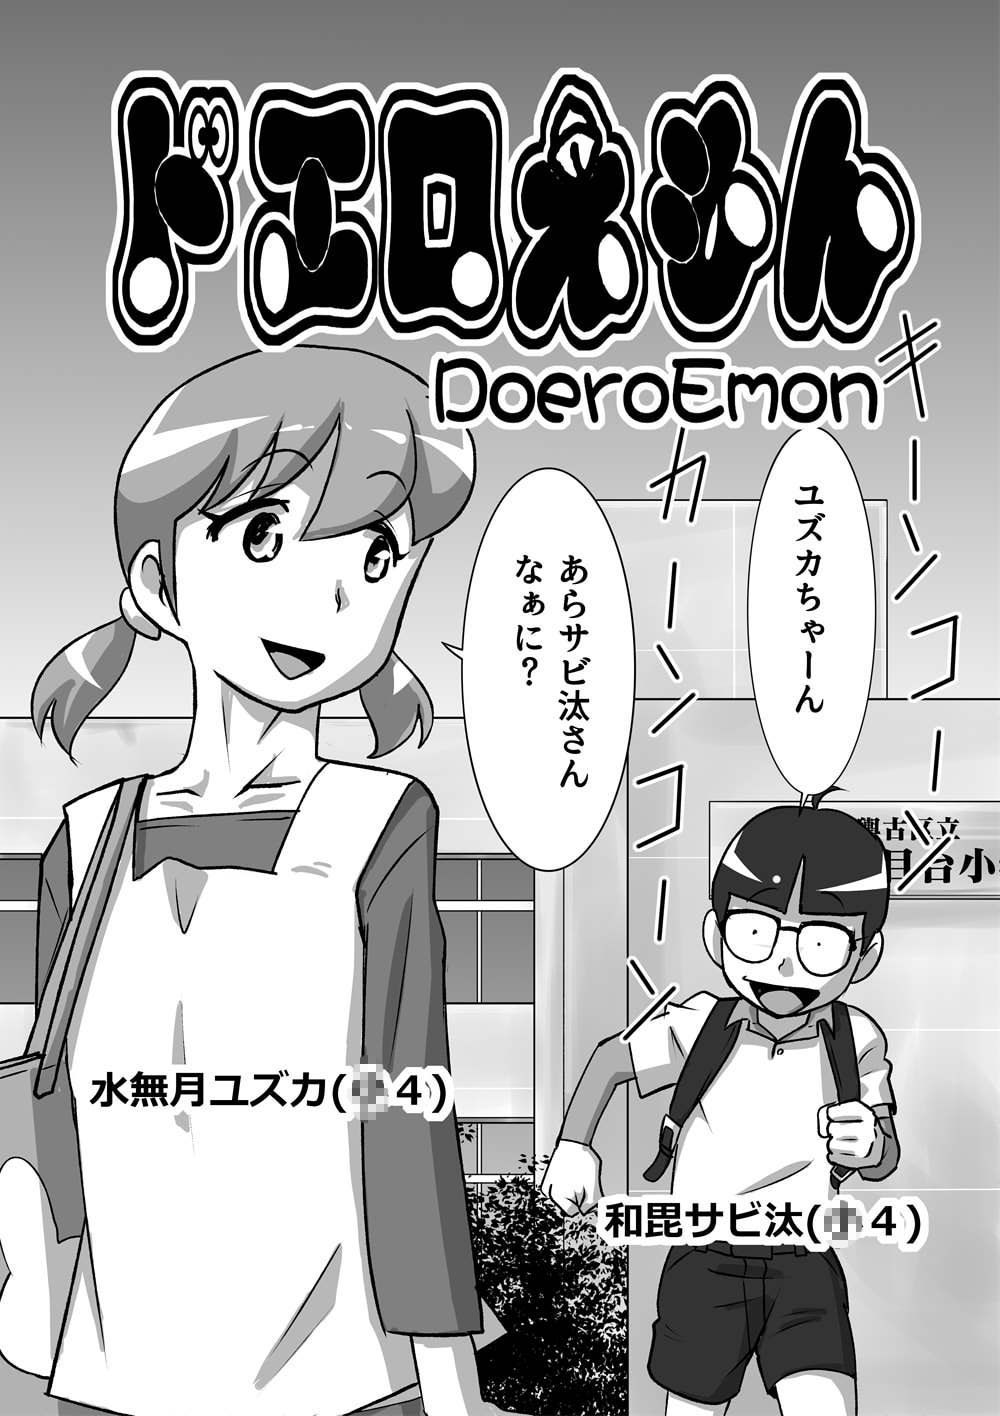 Xxx Doraemon - doraemon - Hentai Manga, Doujins, XXX & Anime Porn